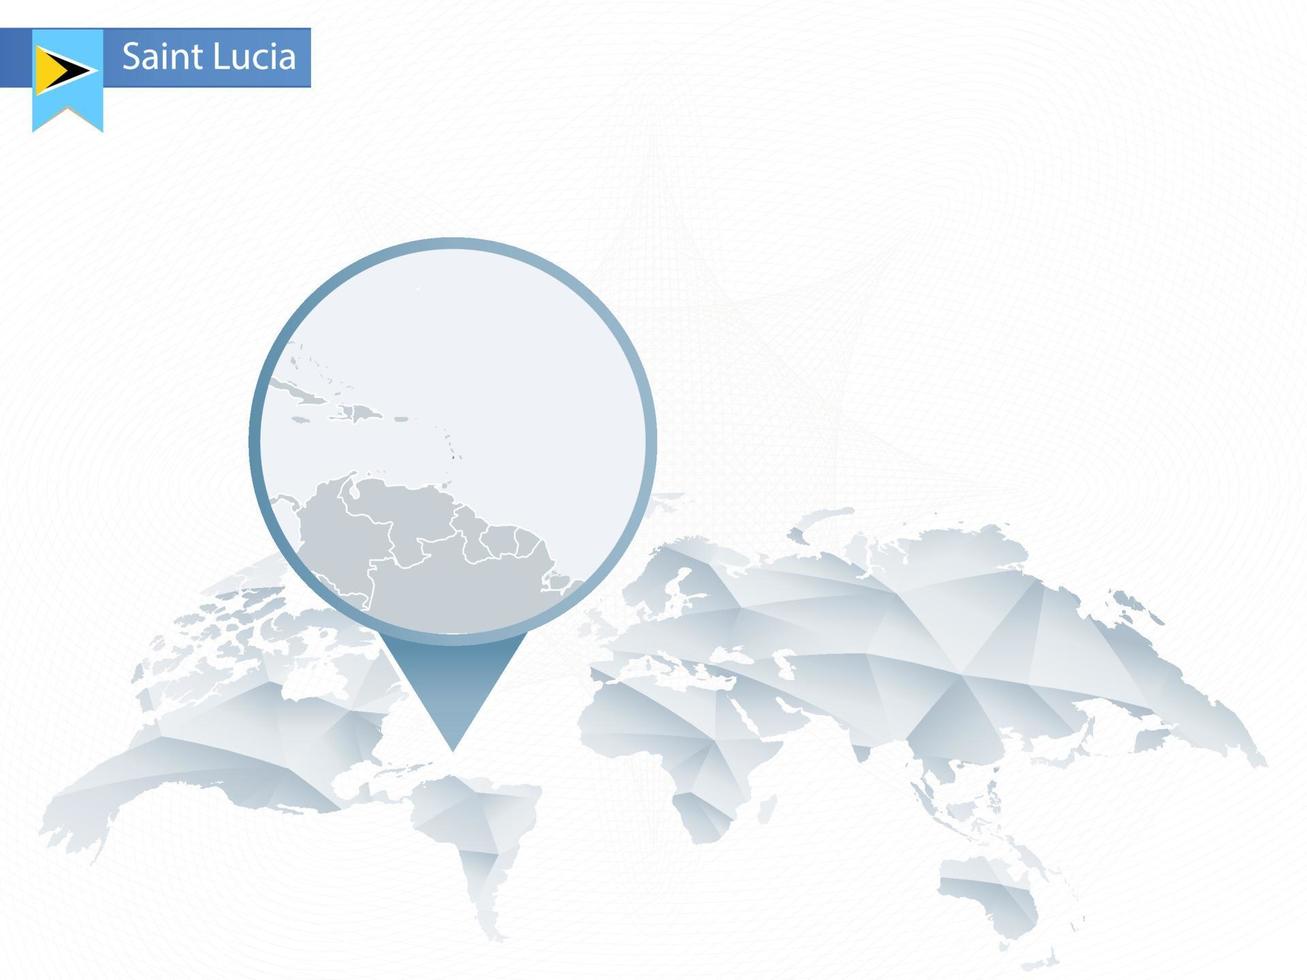 mappa del mondo arrotondata astratta con mappa dettagliata di santa lucia appuntata. vettore